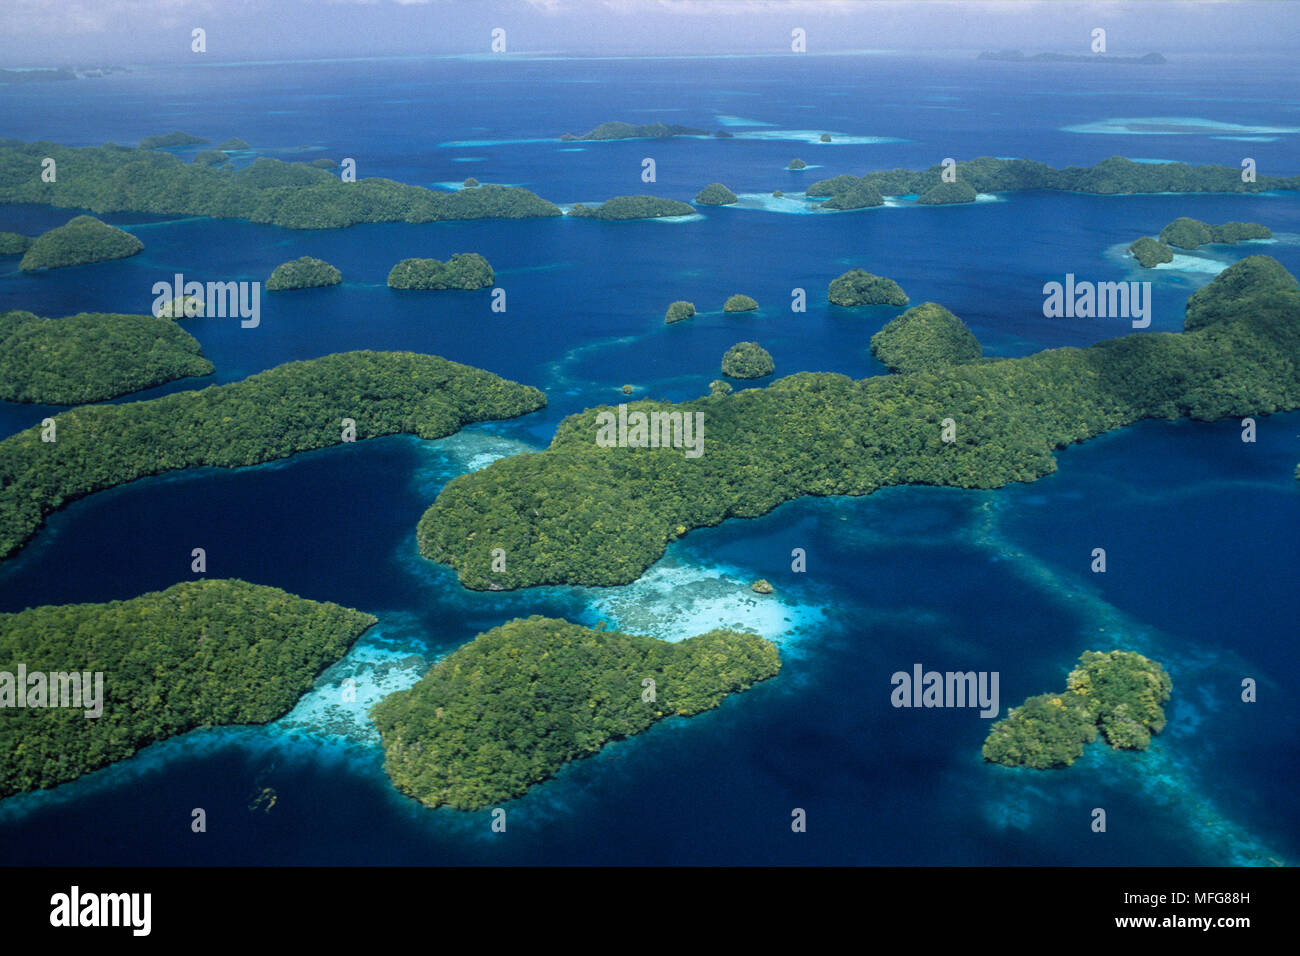 Luftaufnahme von Palau Inseln, Palau (Belau), Mikronesien im Pazifischen Ozean Datum: 23.07.08 Ref.: ZB777 117155 0003 obligatorischen CREDIT: Oceans-Image / Fotos Stockfoto